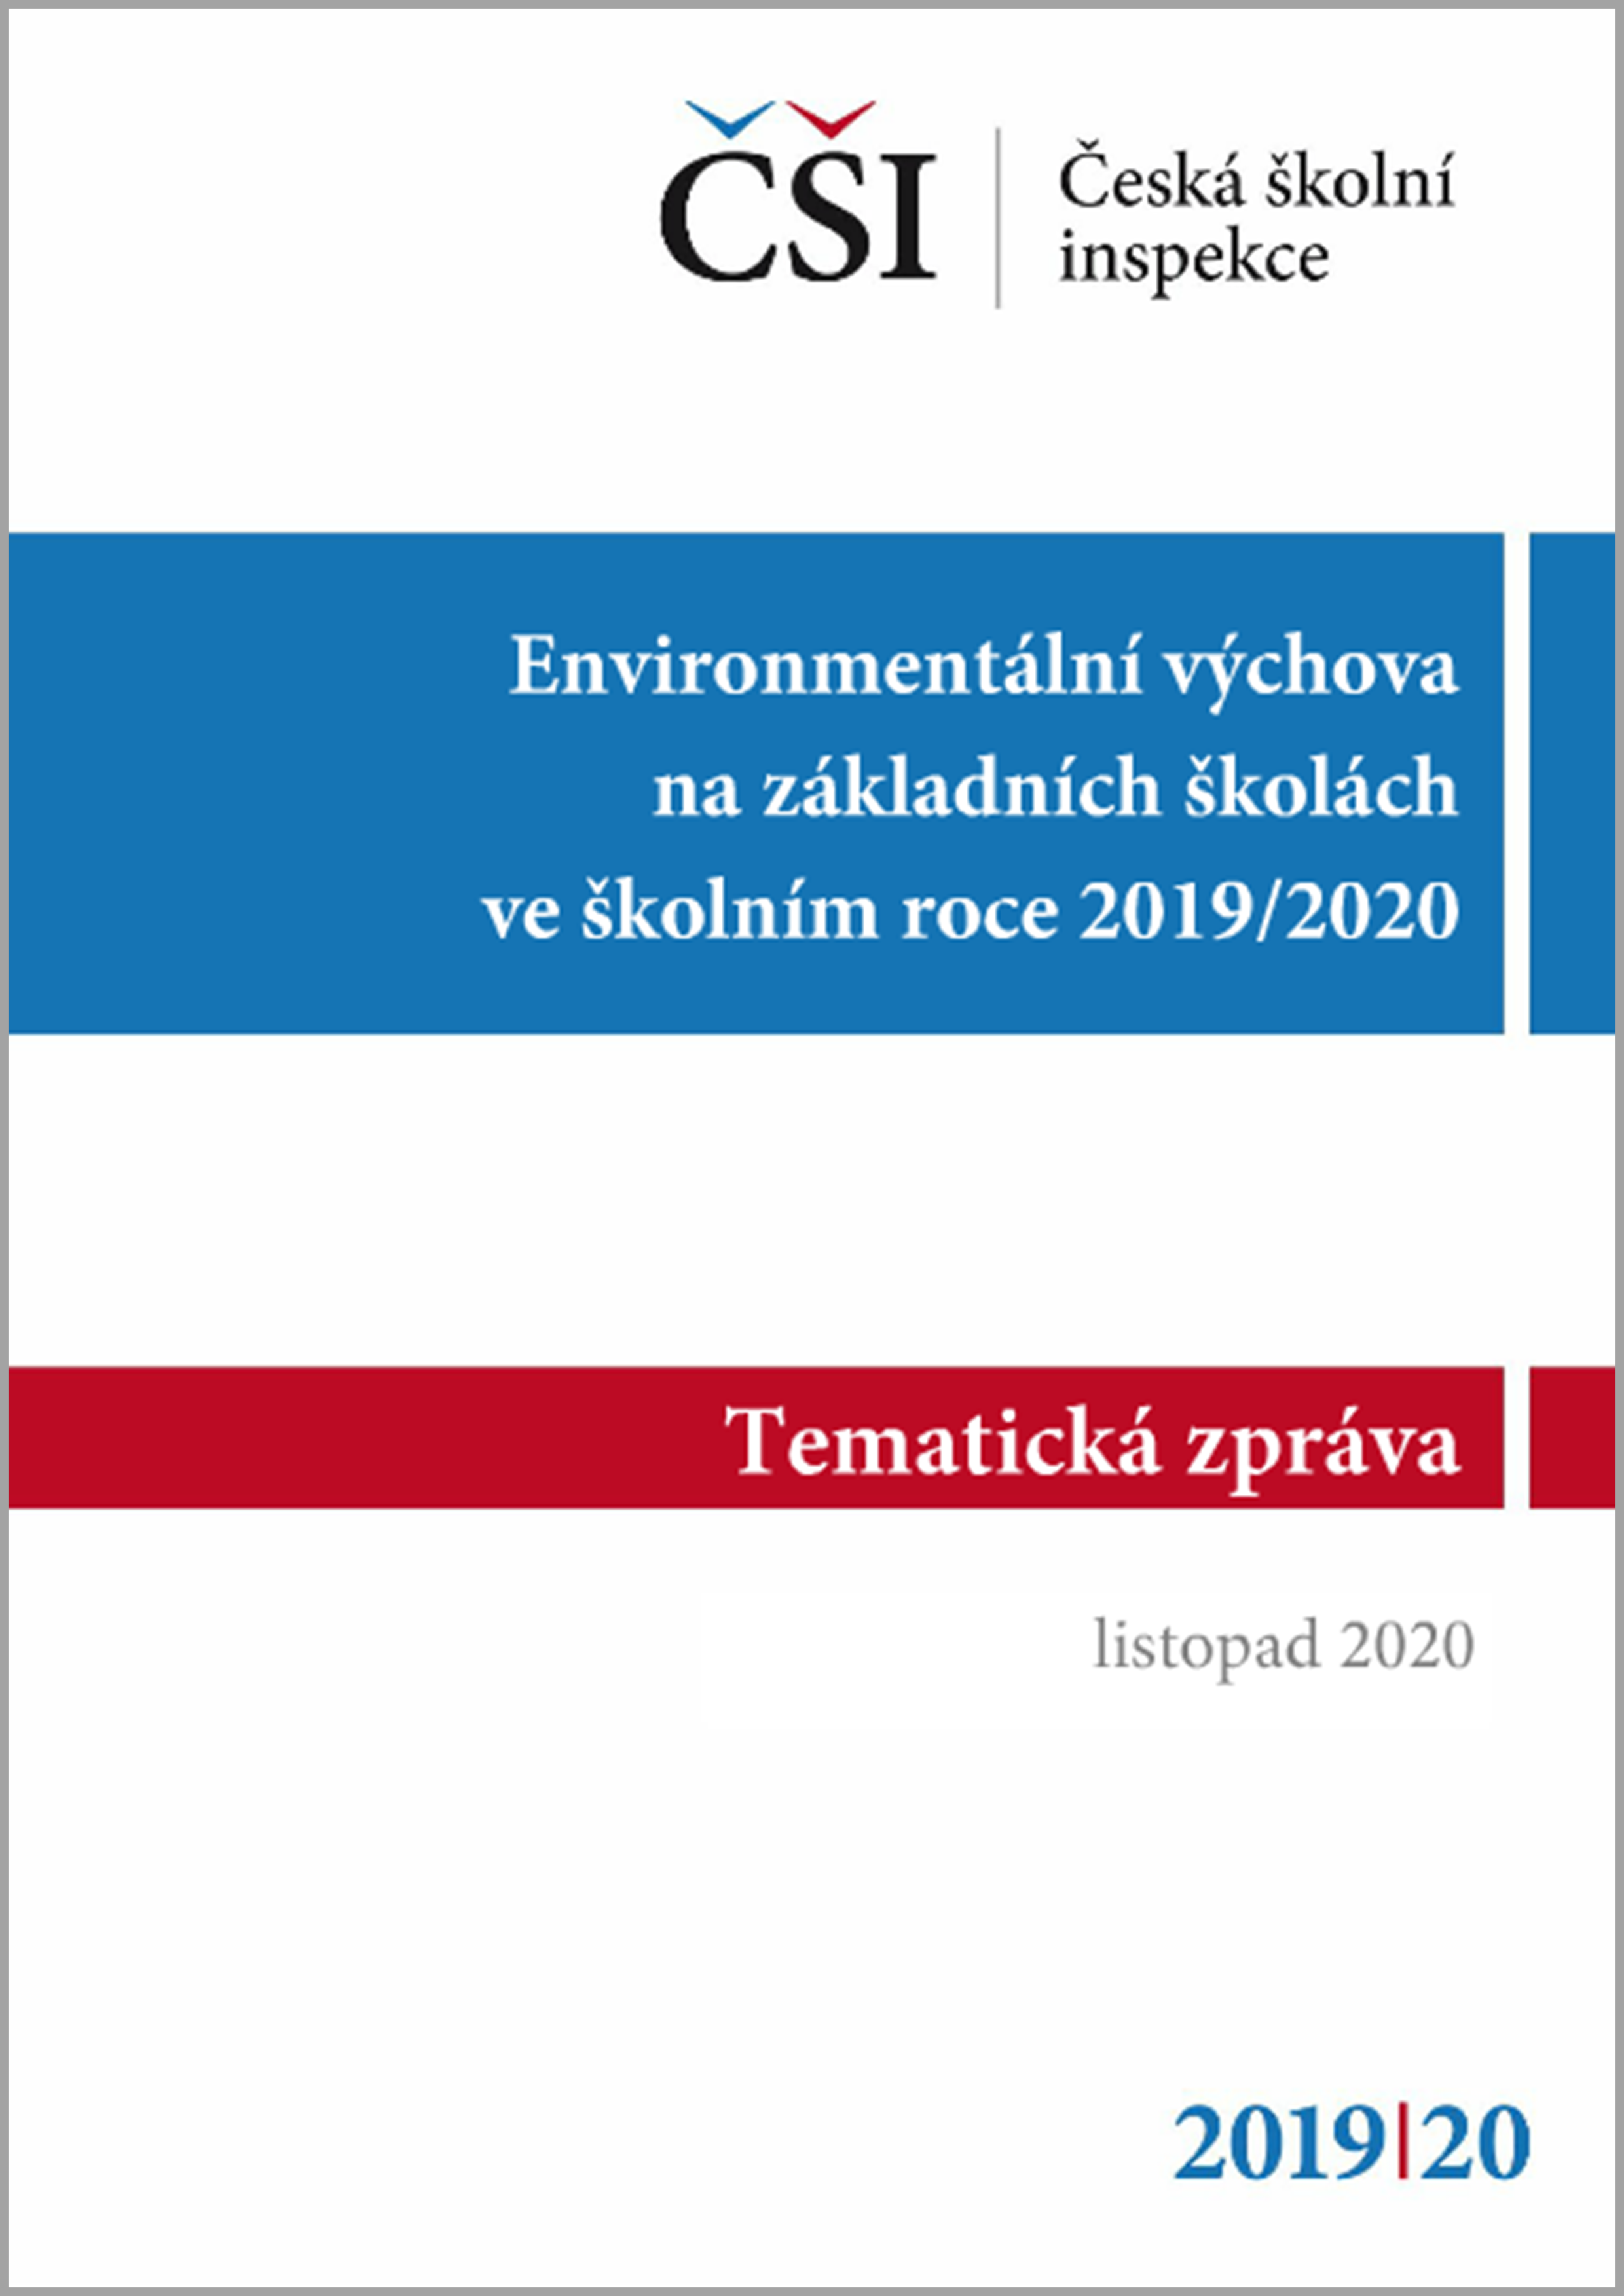 Tematická zpráva - Environmentální výchova na základních školách ve školním roce 2019/2020